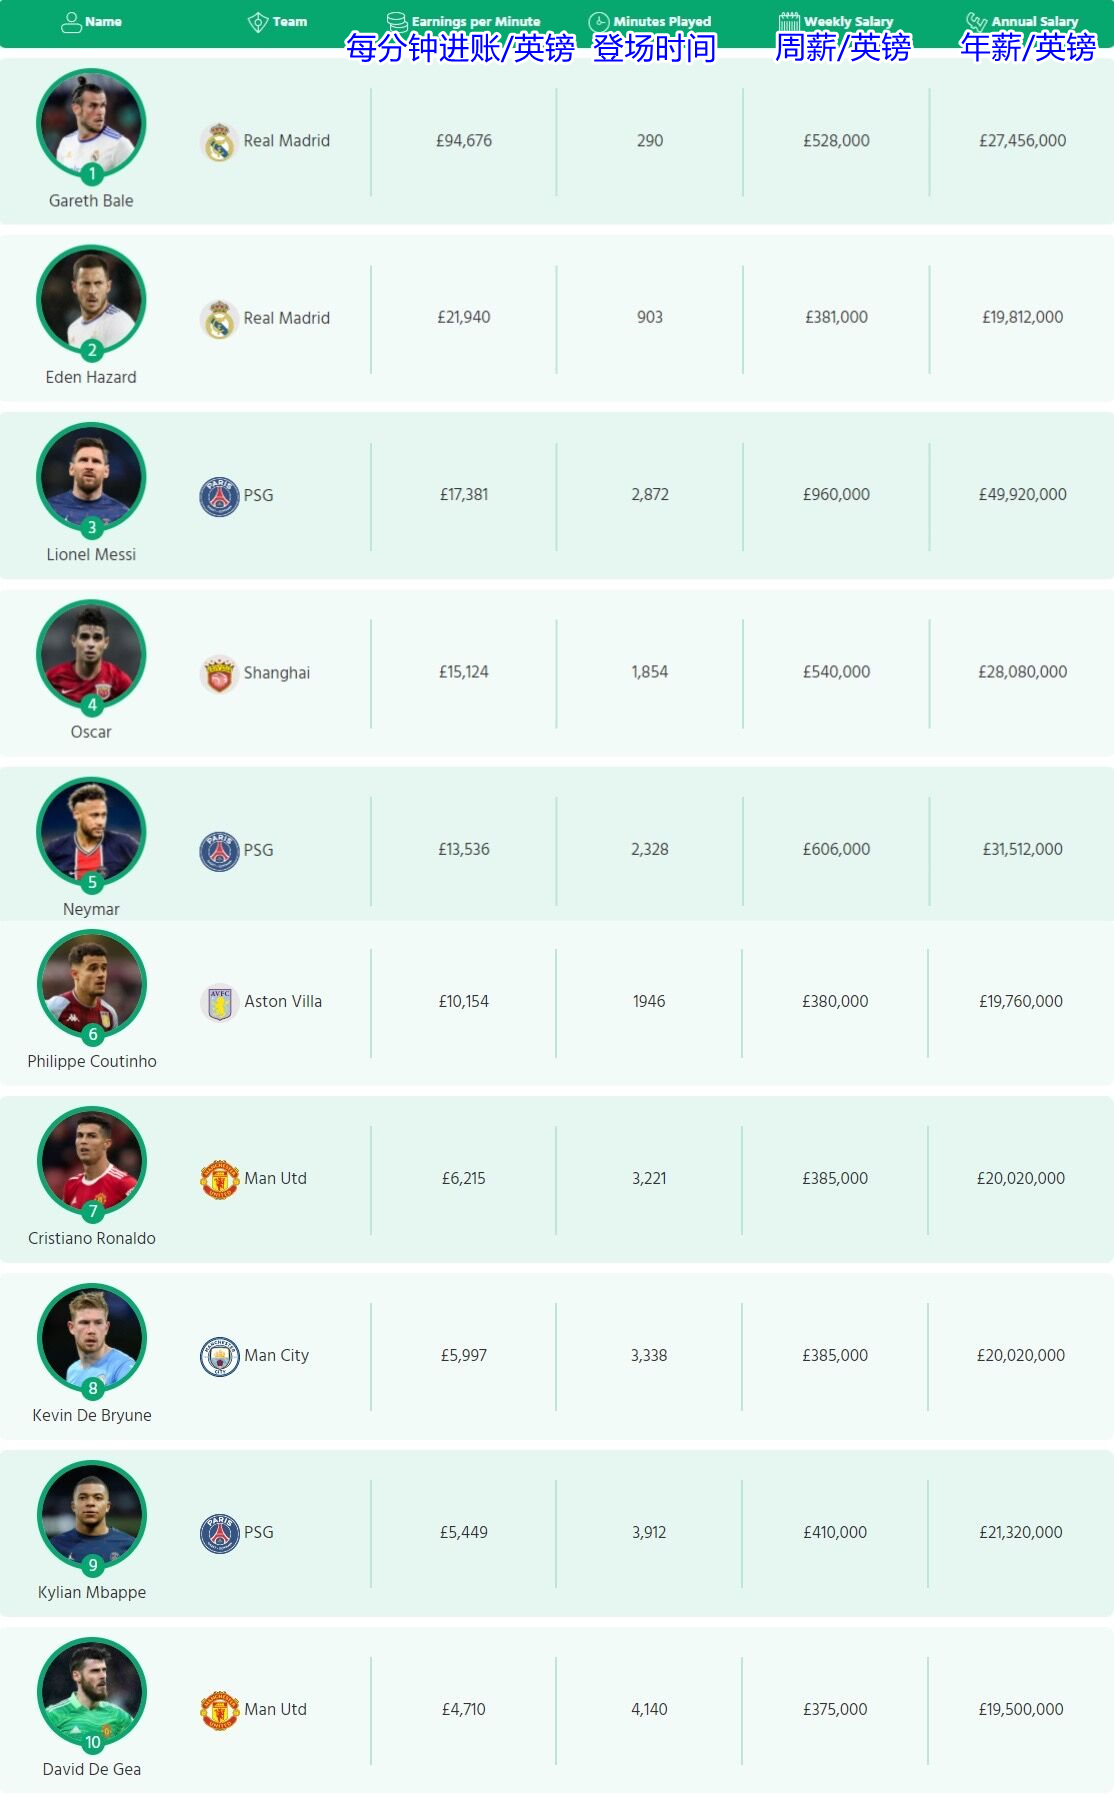 💰每分钟进账最多的球员是谁？贝尔94676镑、梅西17381镑